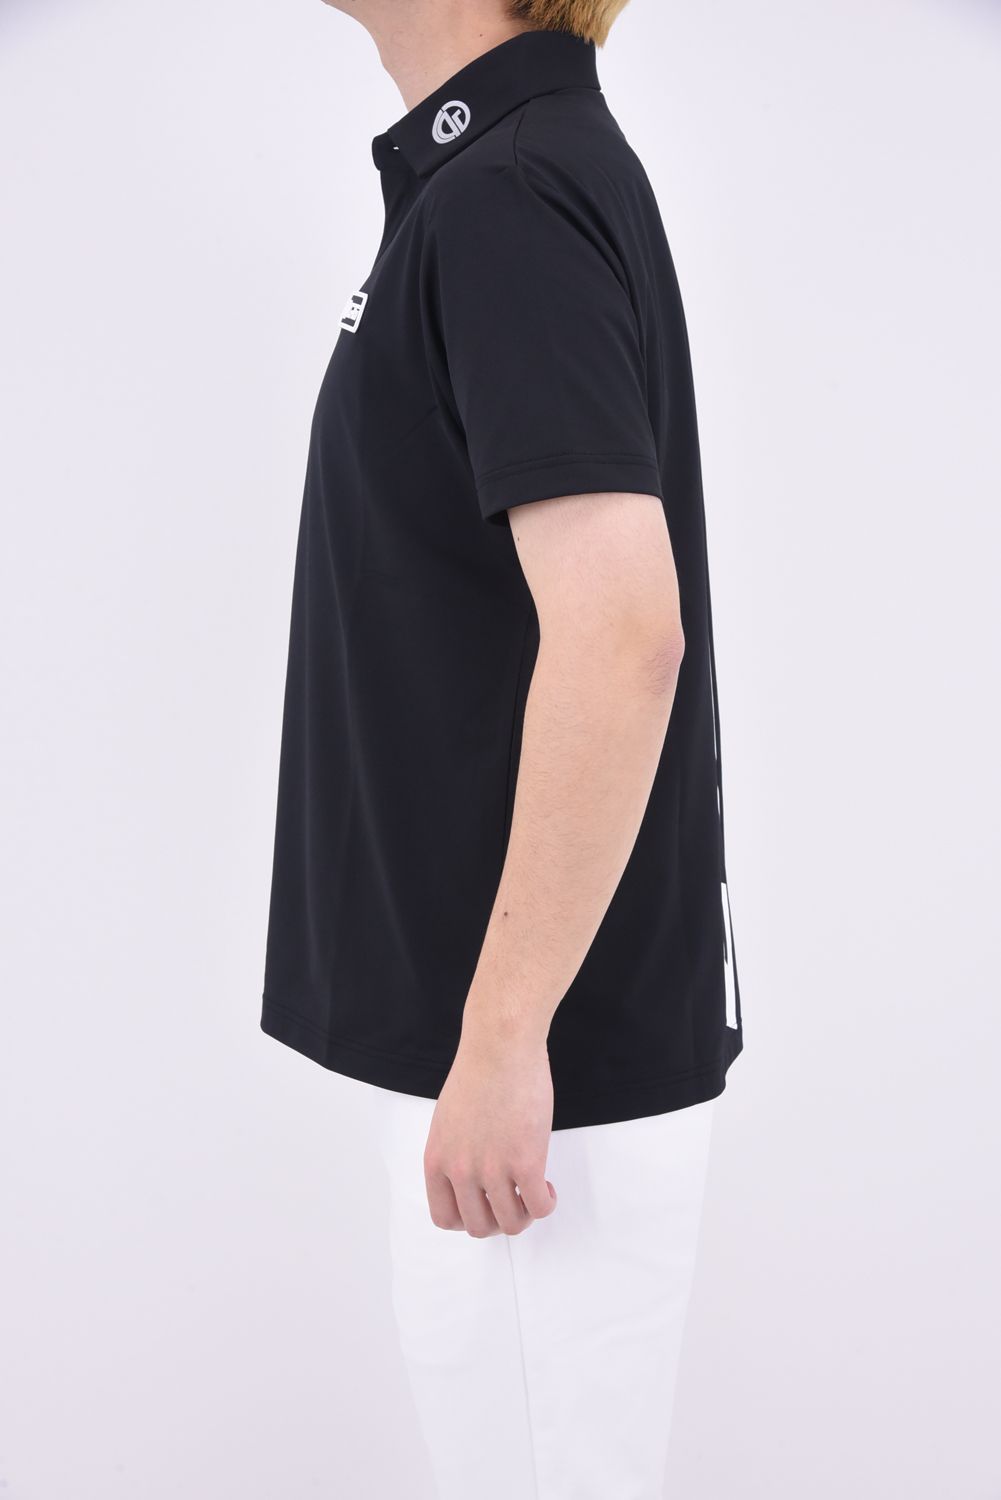 CPG GOLF - BIG LOGO POLO / ビッグロゴ ポロシャツ (ブラック 